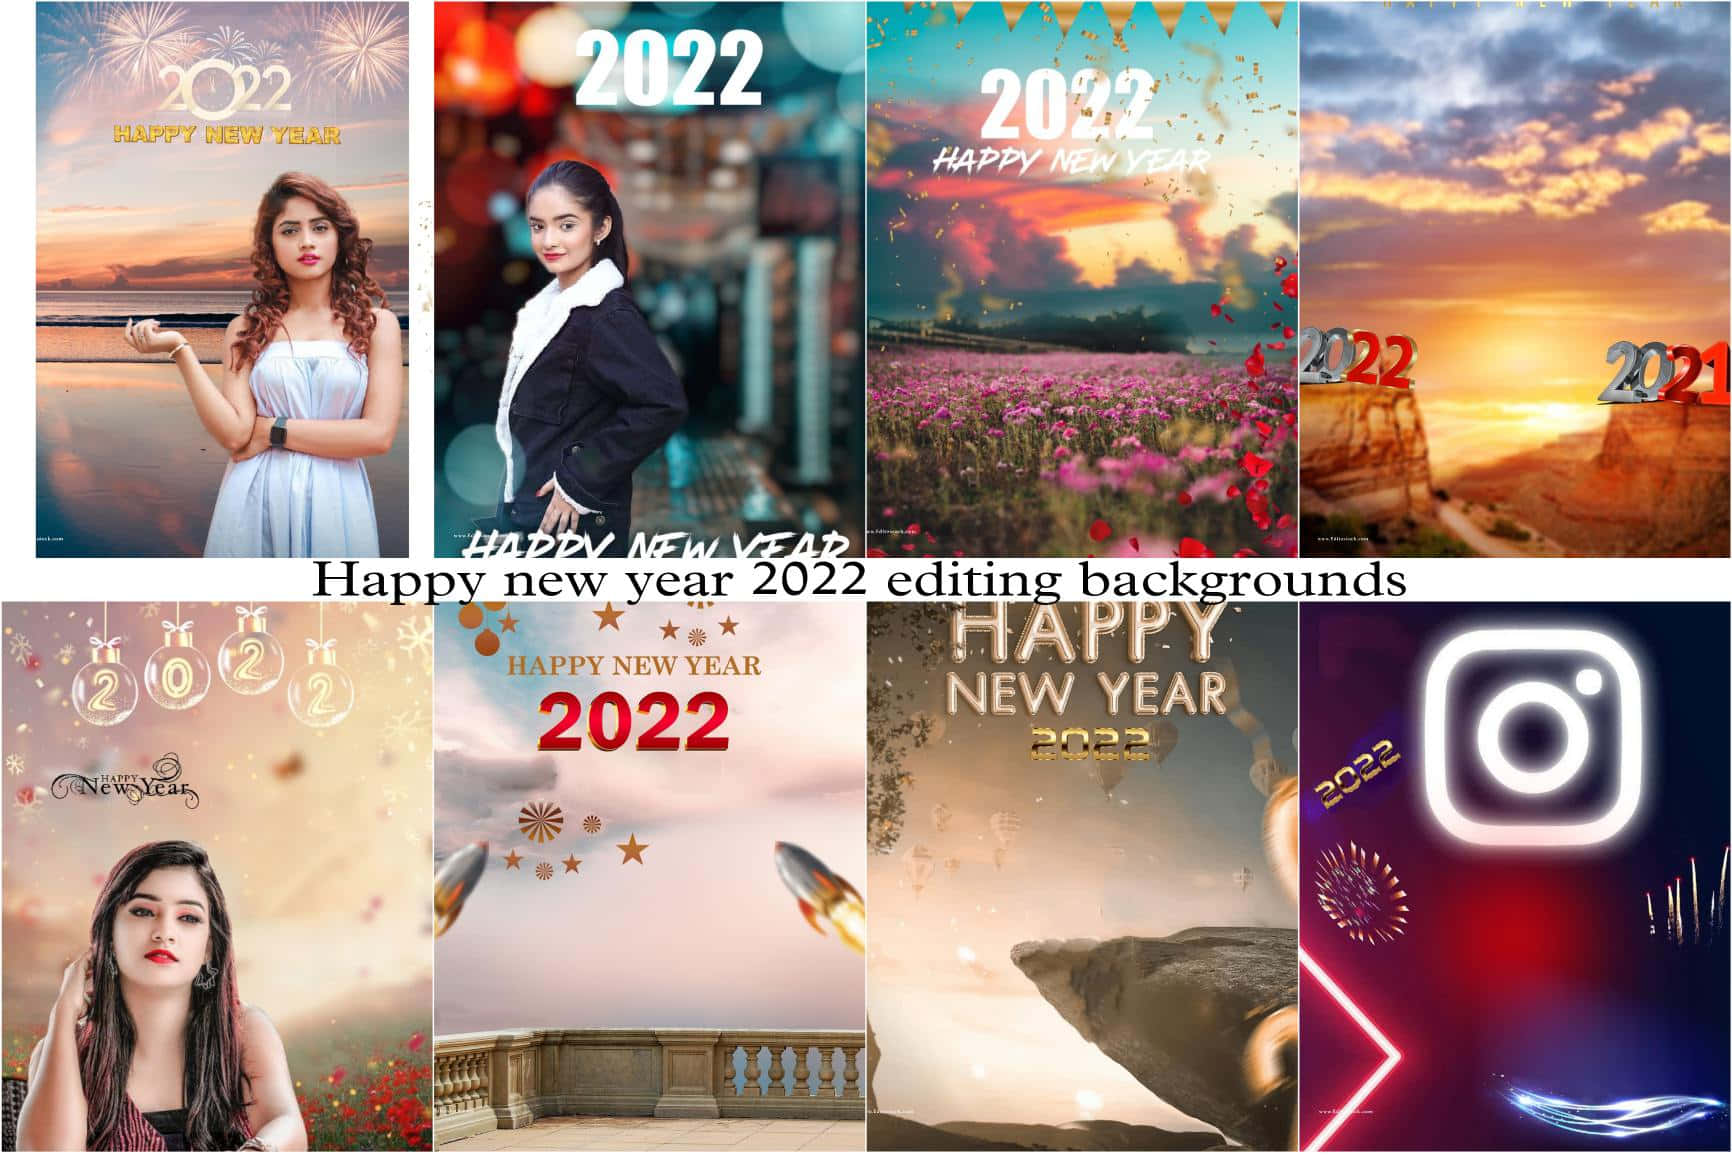 Velkommen til år 2022!